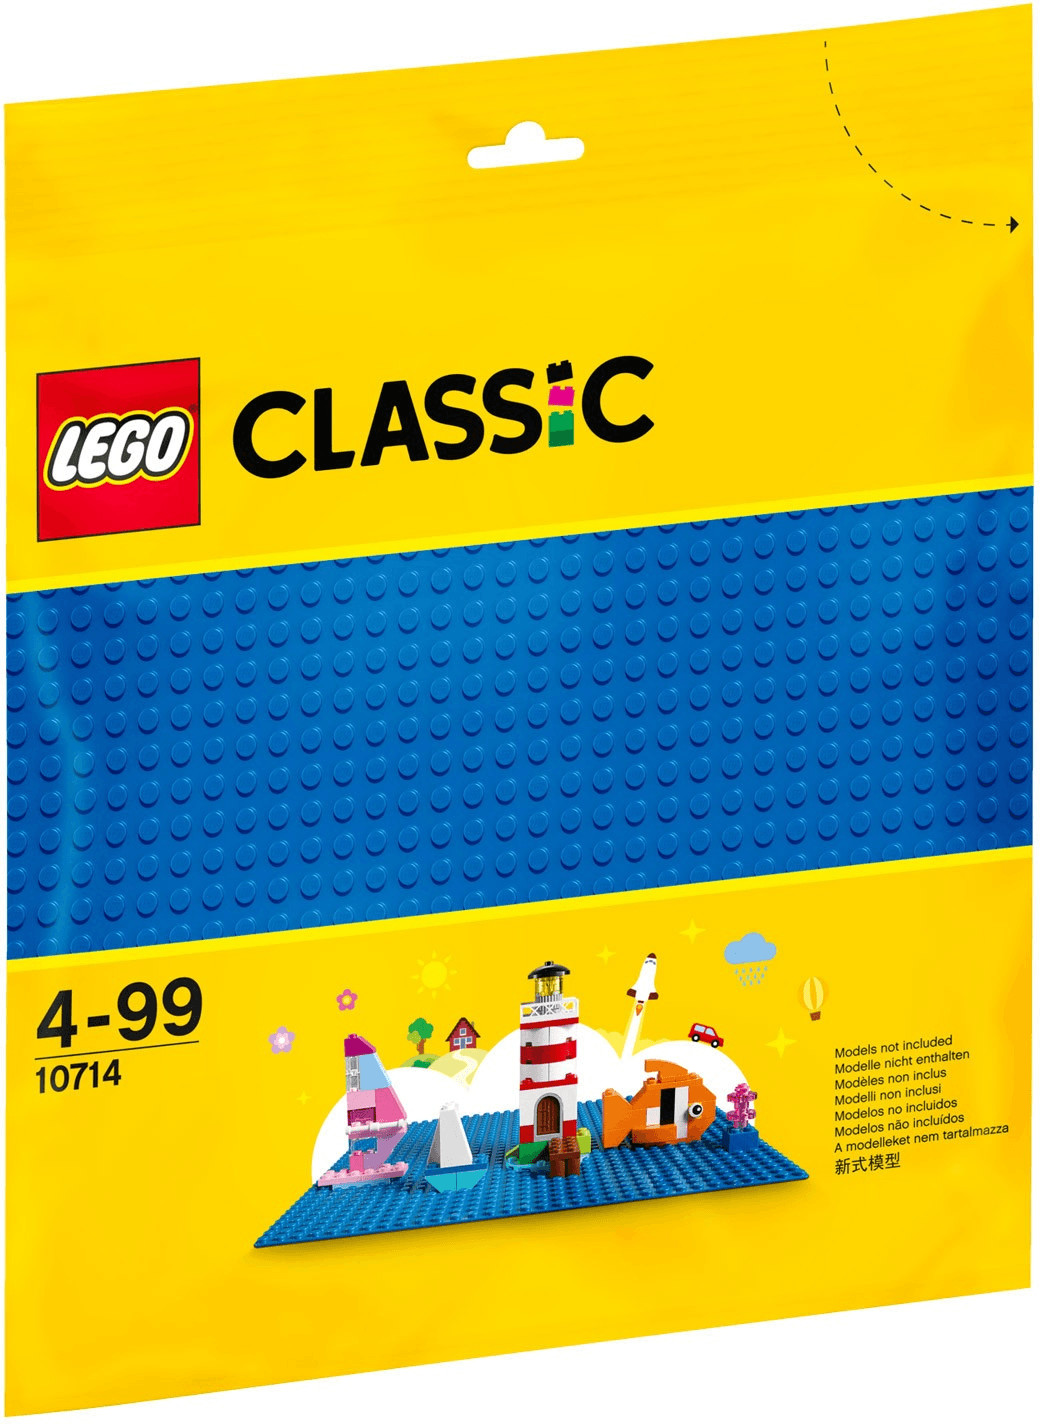 Lego Briques - 626-Grande Plaque De Base Verte 25x25 Cm : : Jeux  et Jouets